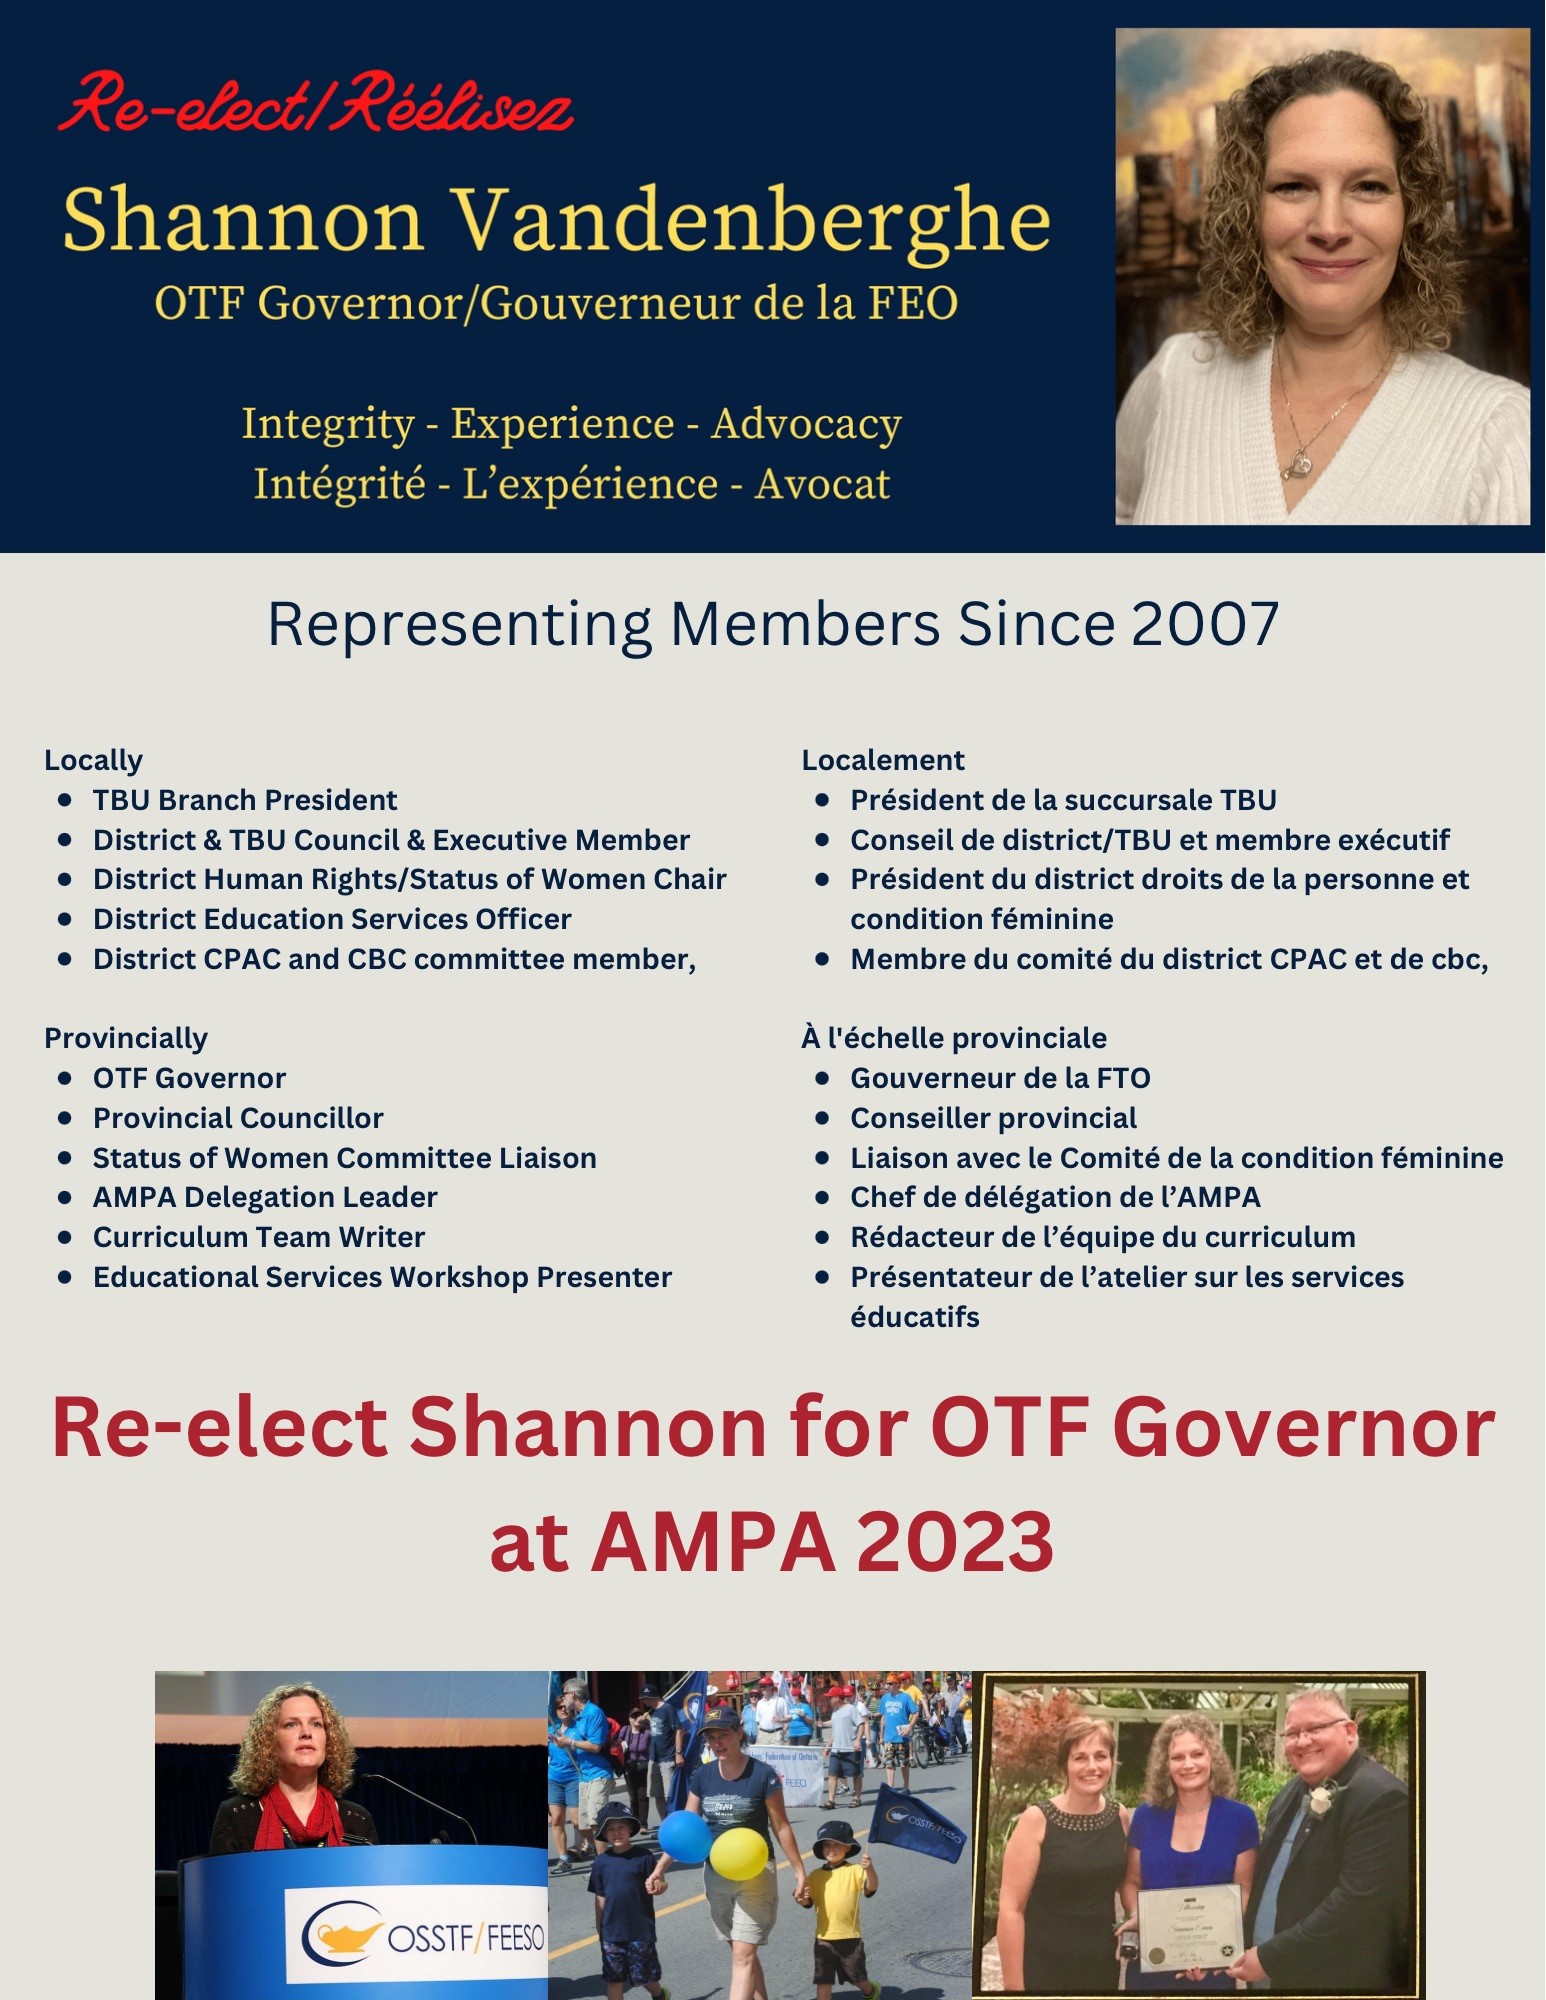 Shannon Vandenberghe - OTF Governor